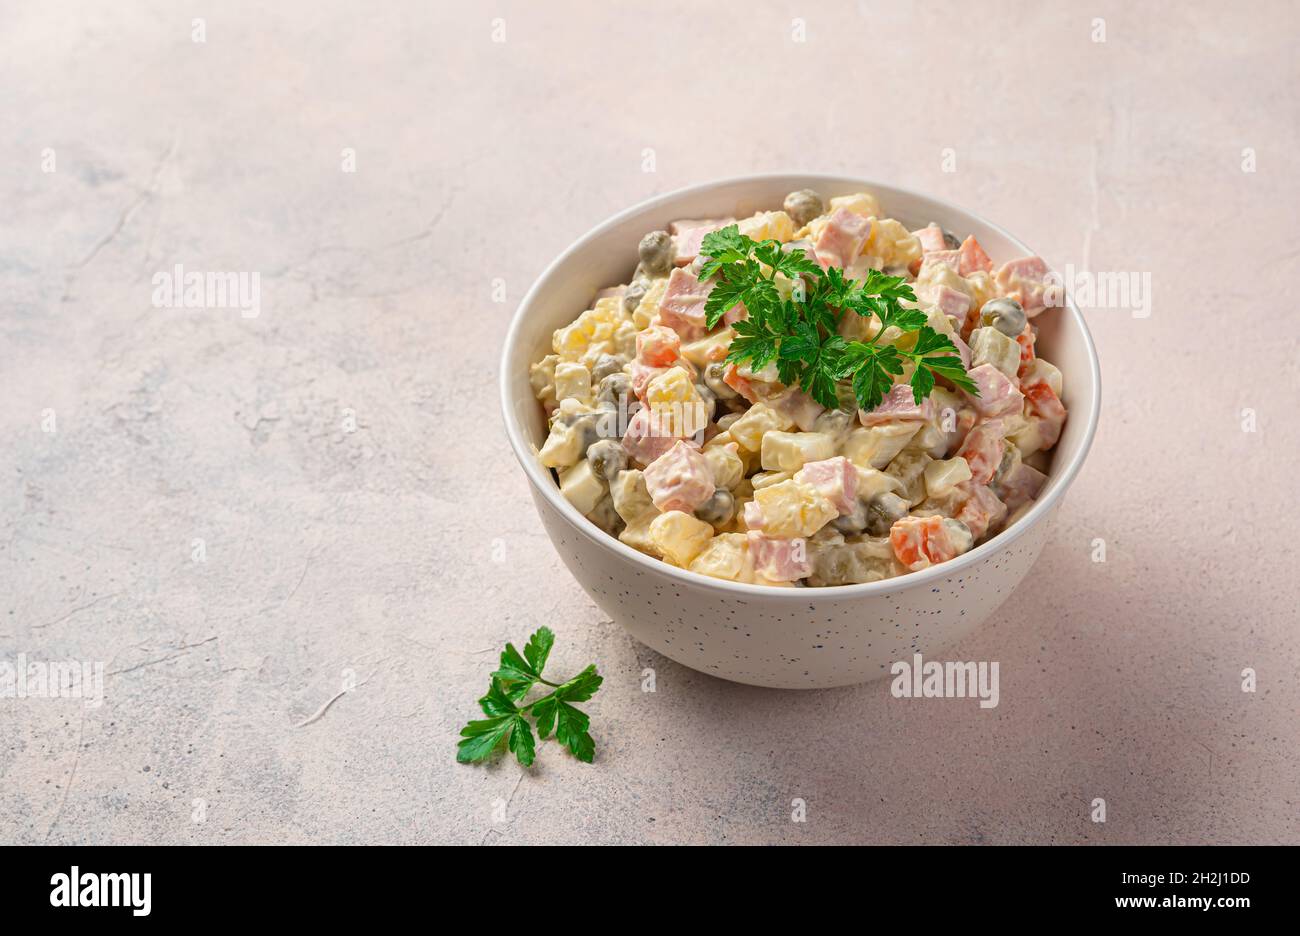 Olivier-Salat mit Gemüse, Wurst und Mayonnaise auf hellem Hintergrund.  Traditioneller russischer Salat Stockfotografie - Alamy